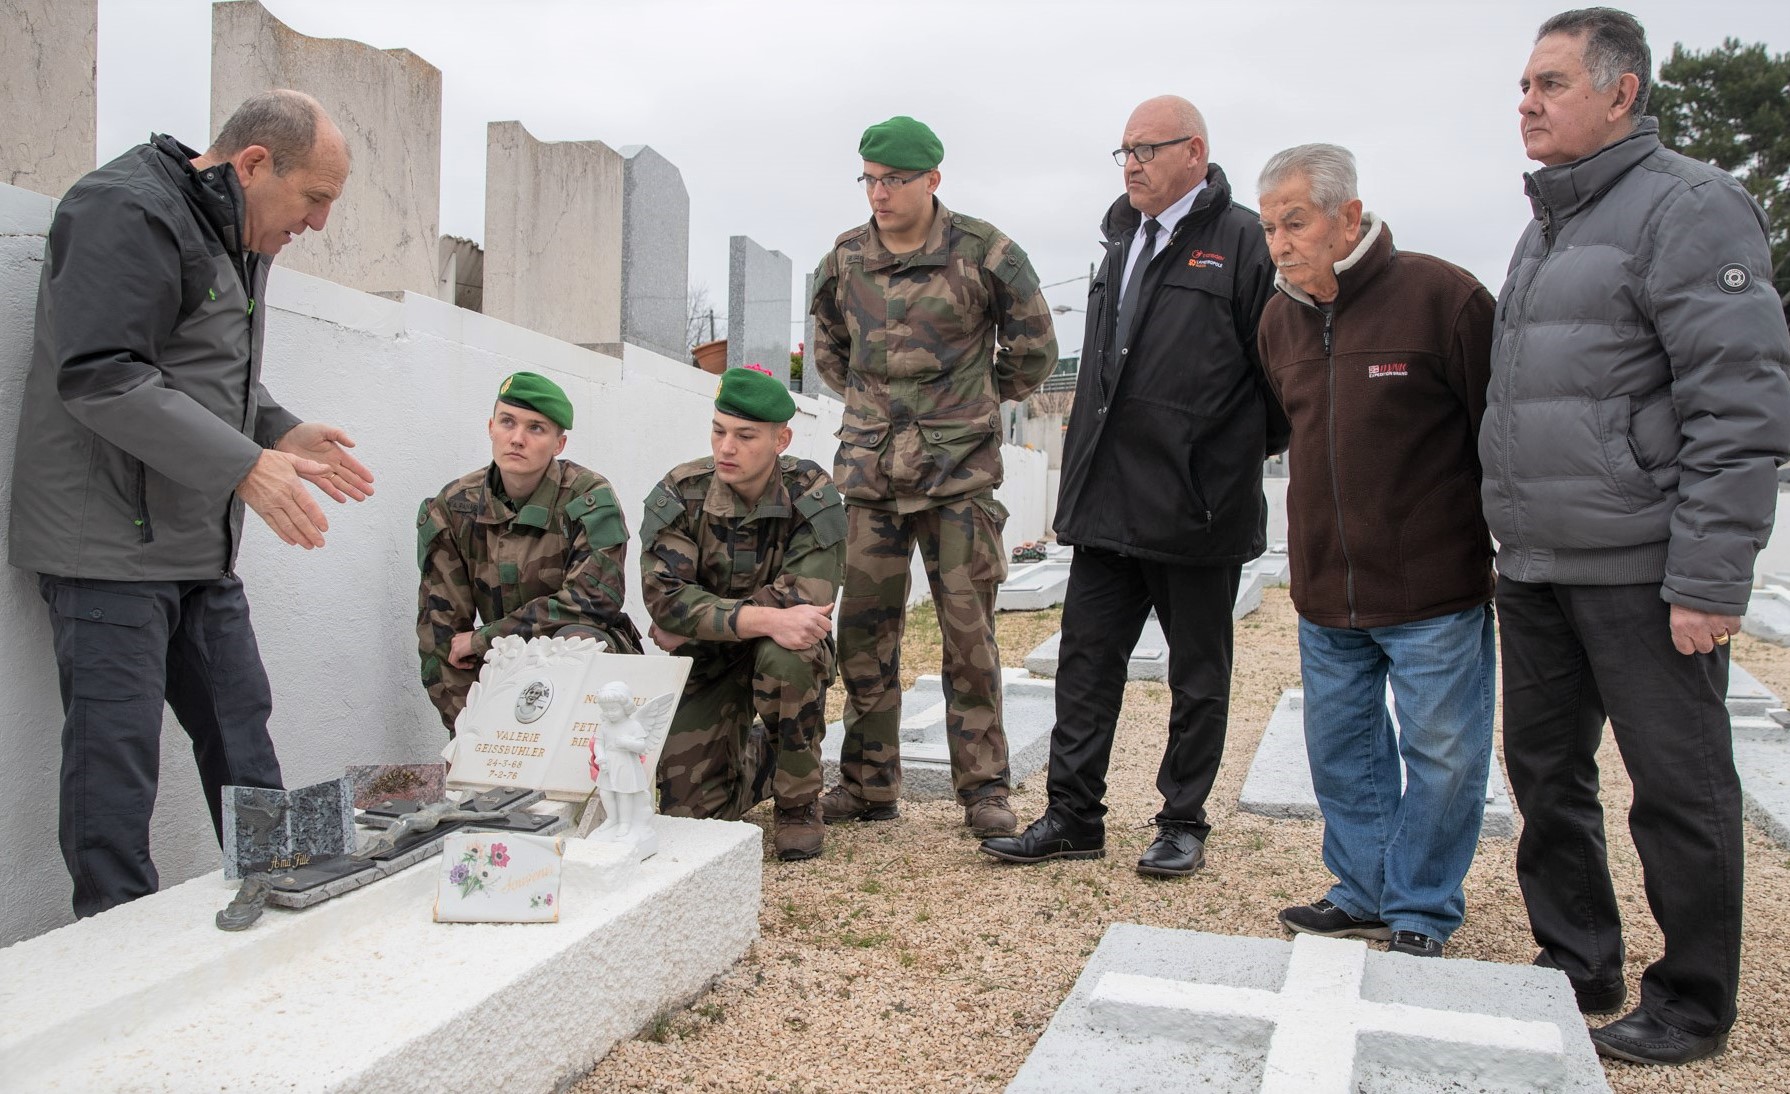 Légion - "Devoir de mémoire": Entretien du carré Légion du cimetière "des Passons" à Aubagne. Jos_1